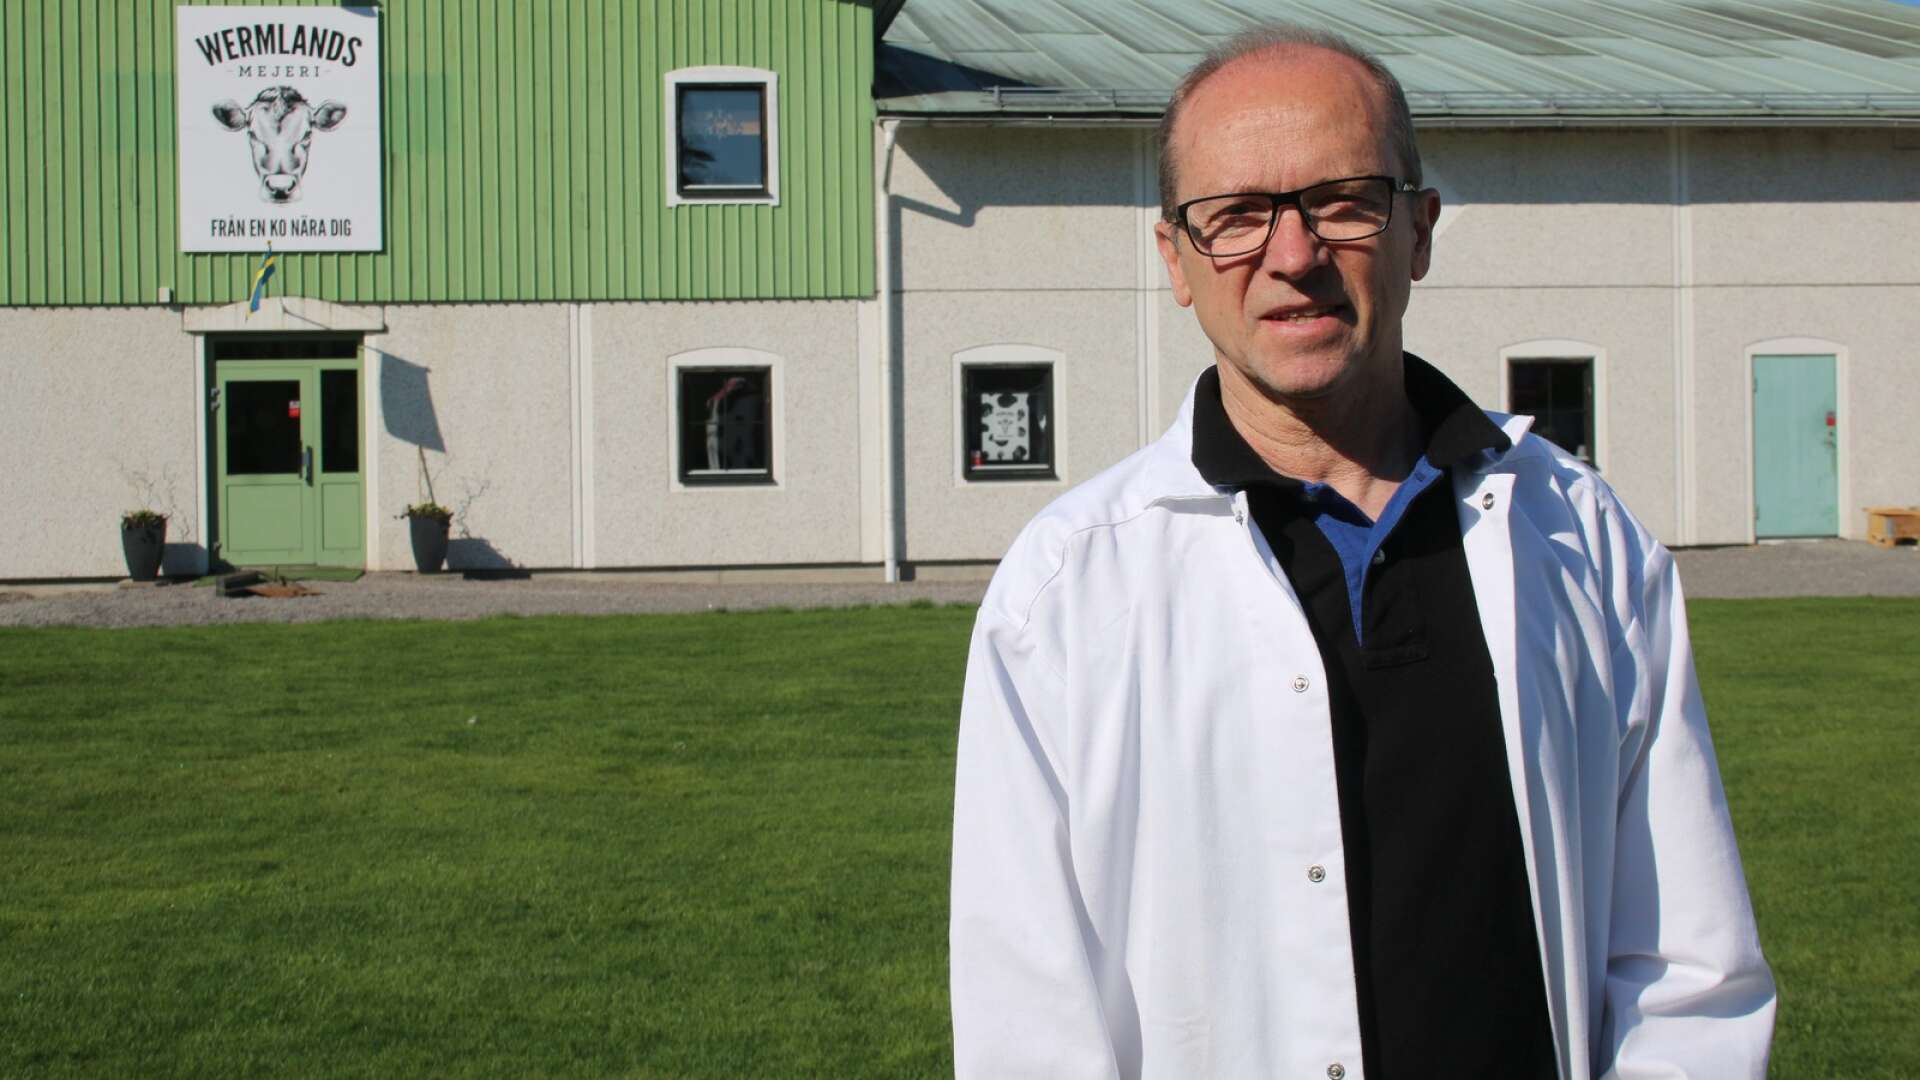 Wermlands mejeris vd Yngve Gustafsson byter olja mot pellets. 